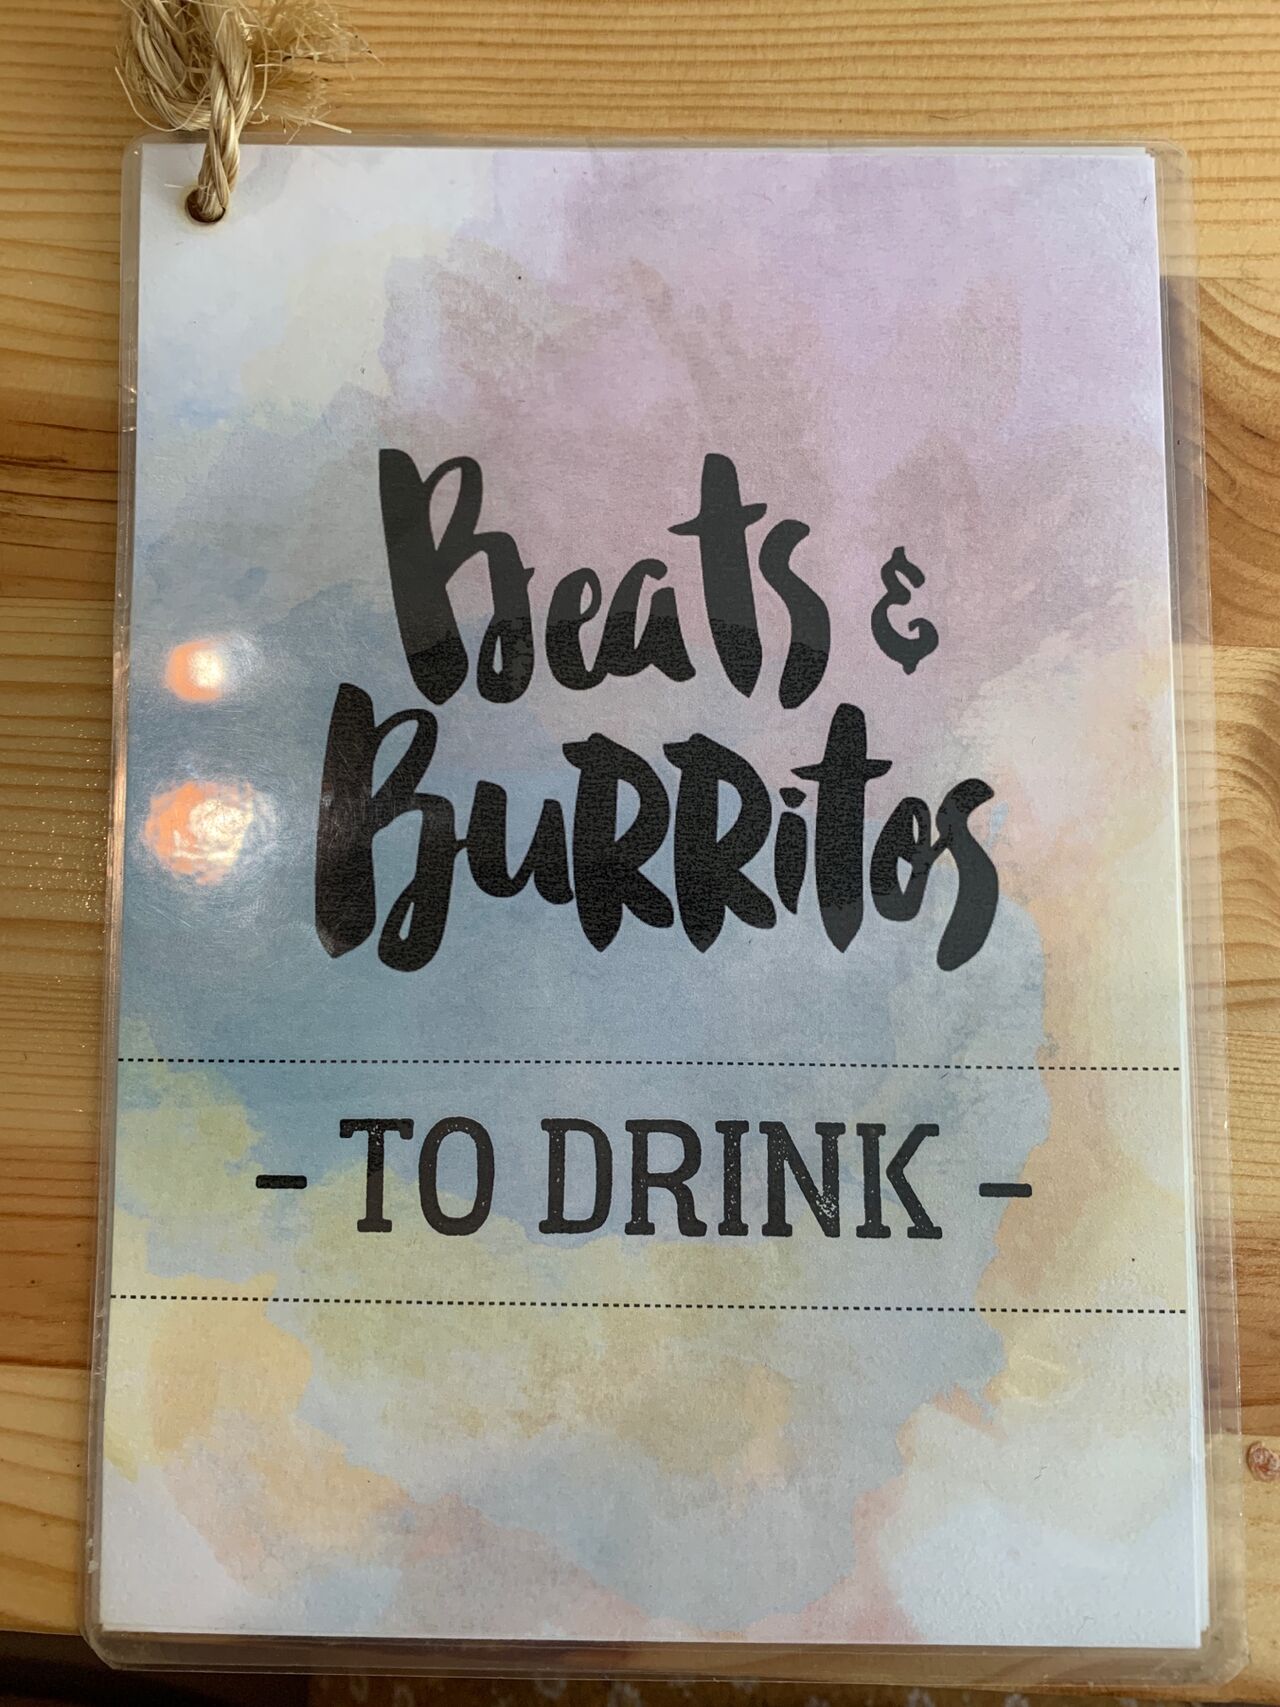 A photo of Beats & Burritos